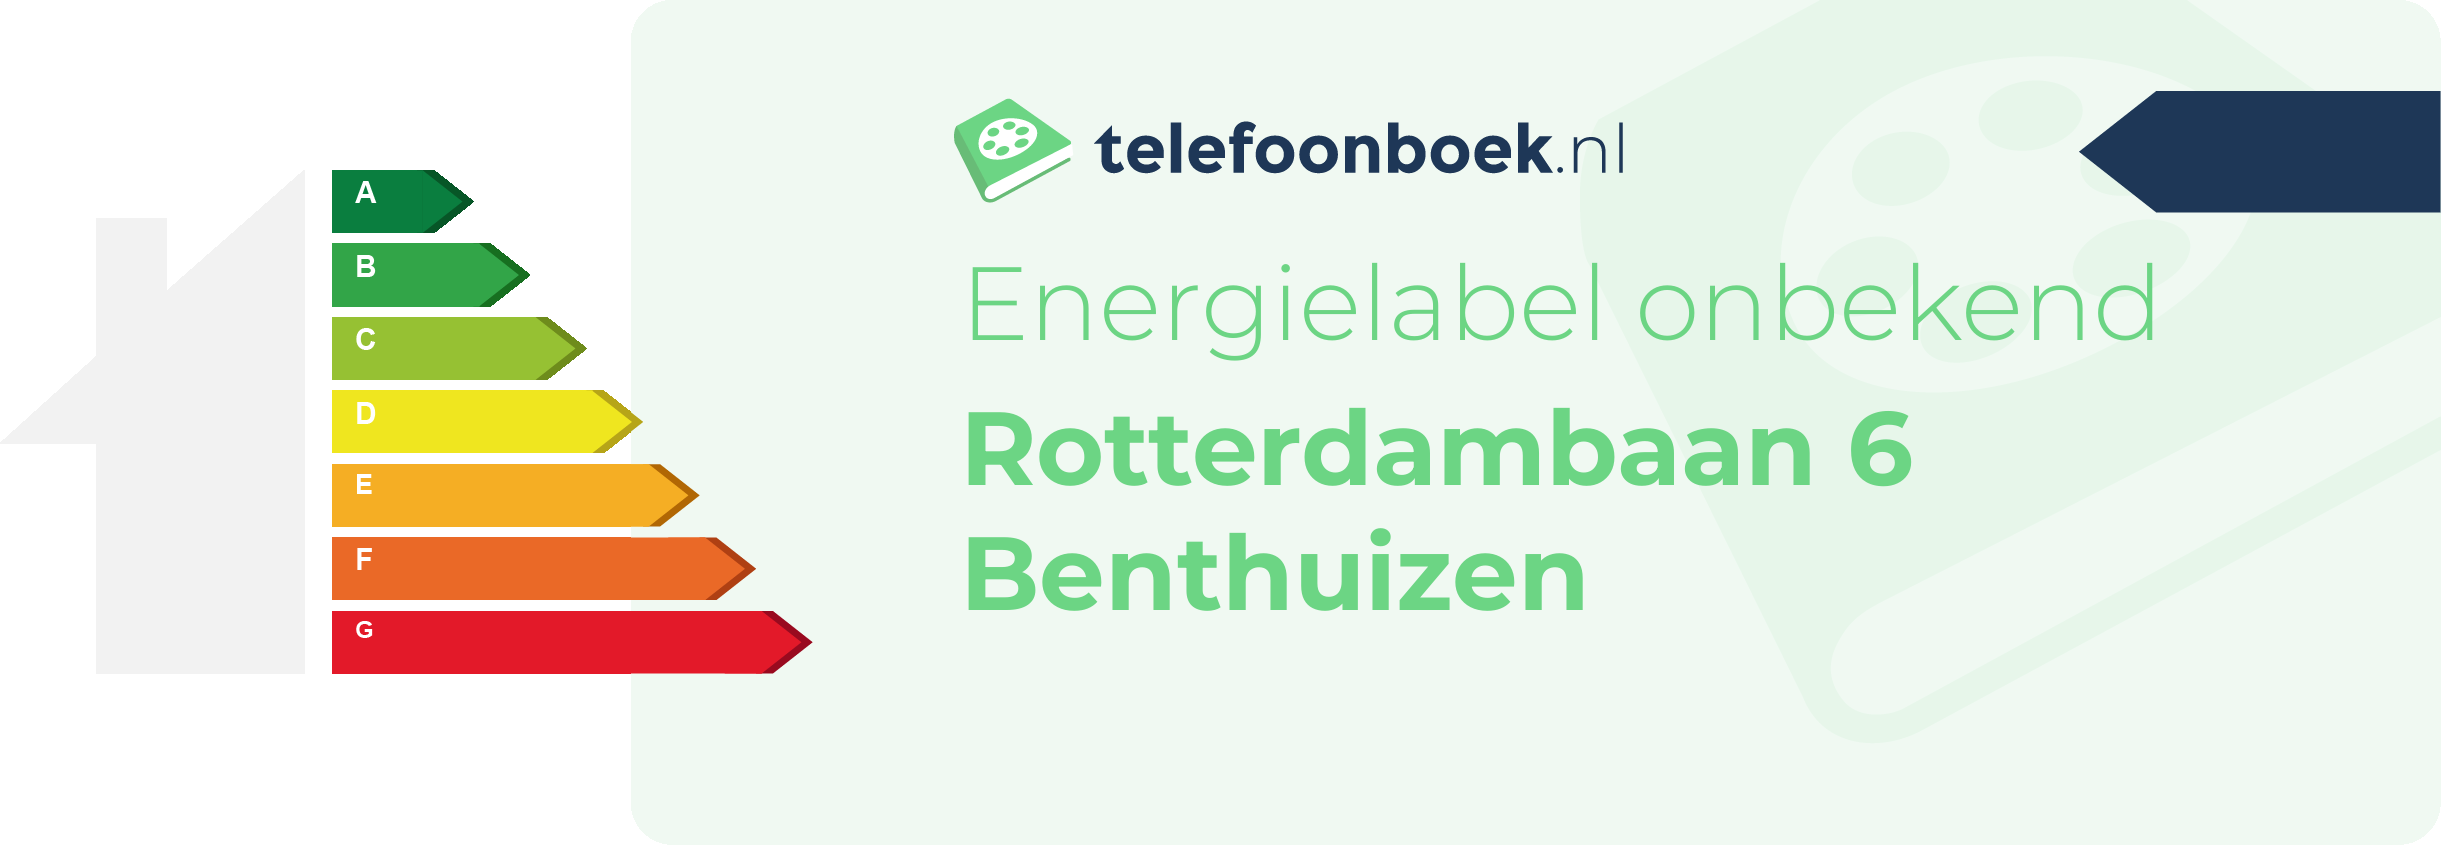 Energielabel Rotterdambaan 6 Benthuizen